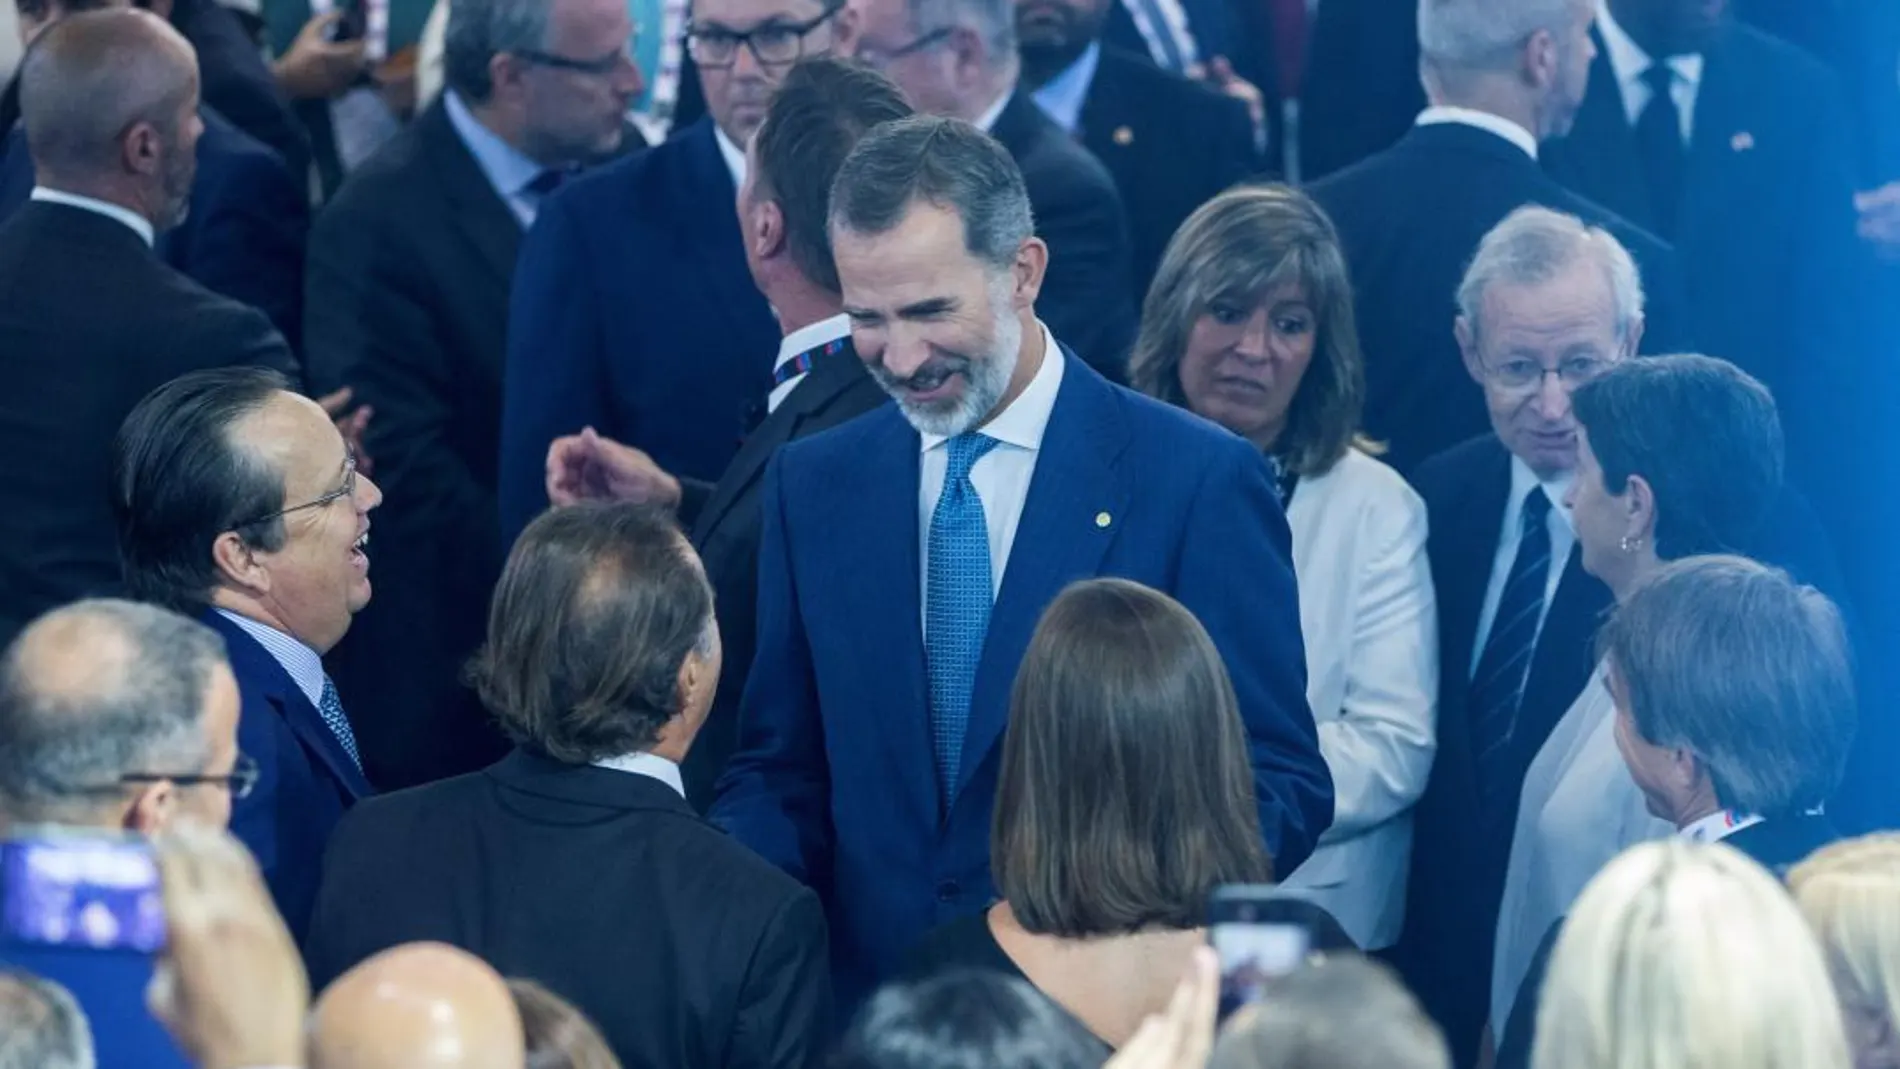 El Rey Felipe VI, visita el expositor de Tellurian, durante la inauguración de la trigésima edición de Gastech / Foto: EFE/Quique García